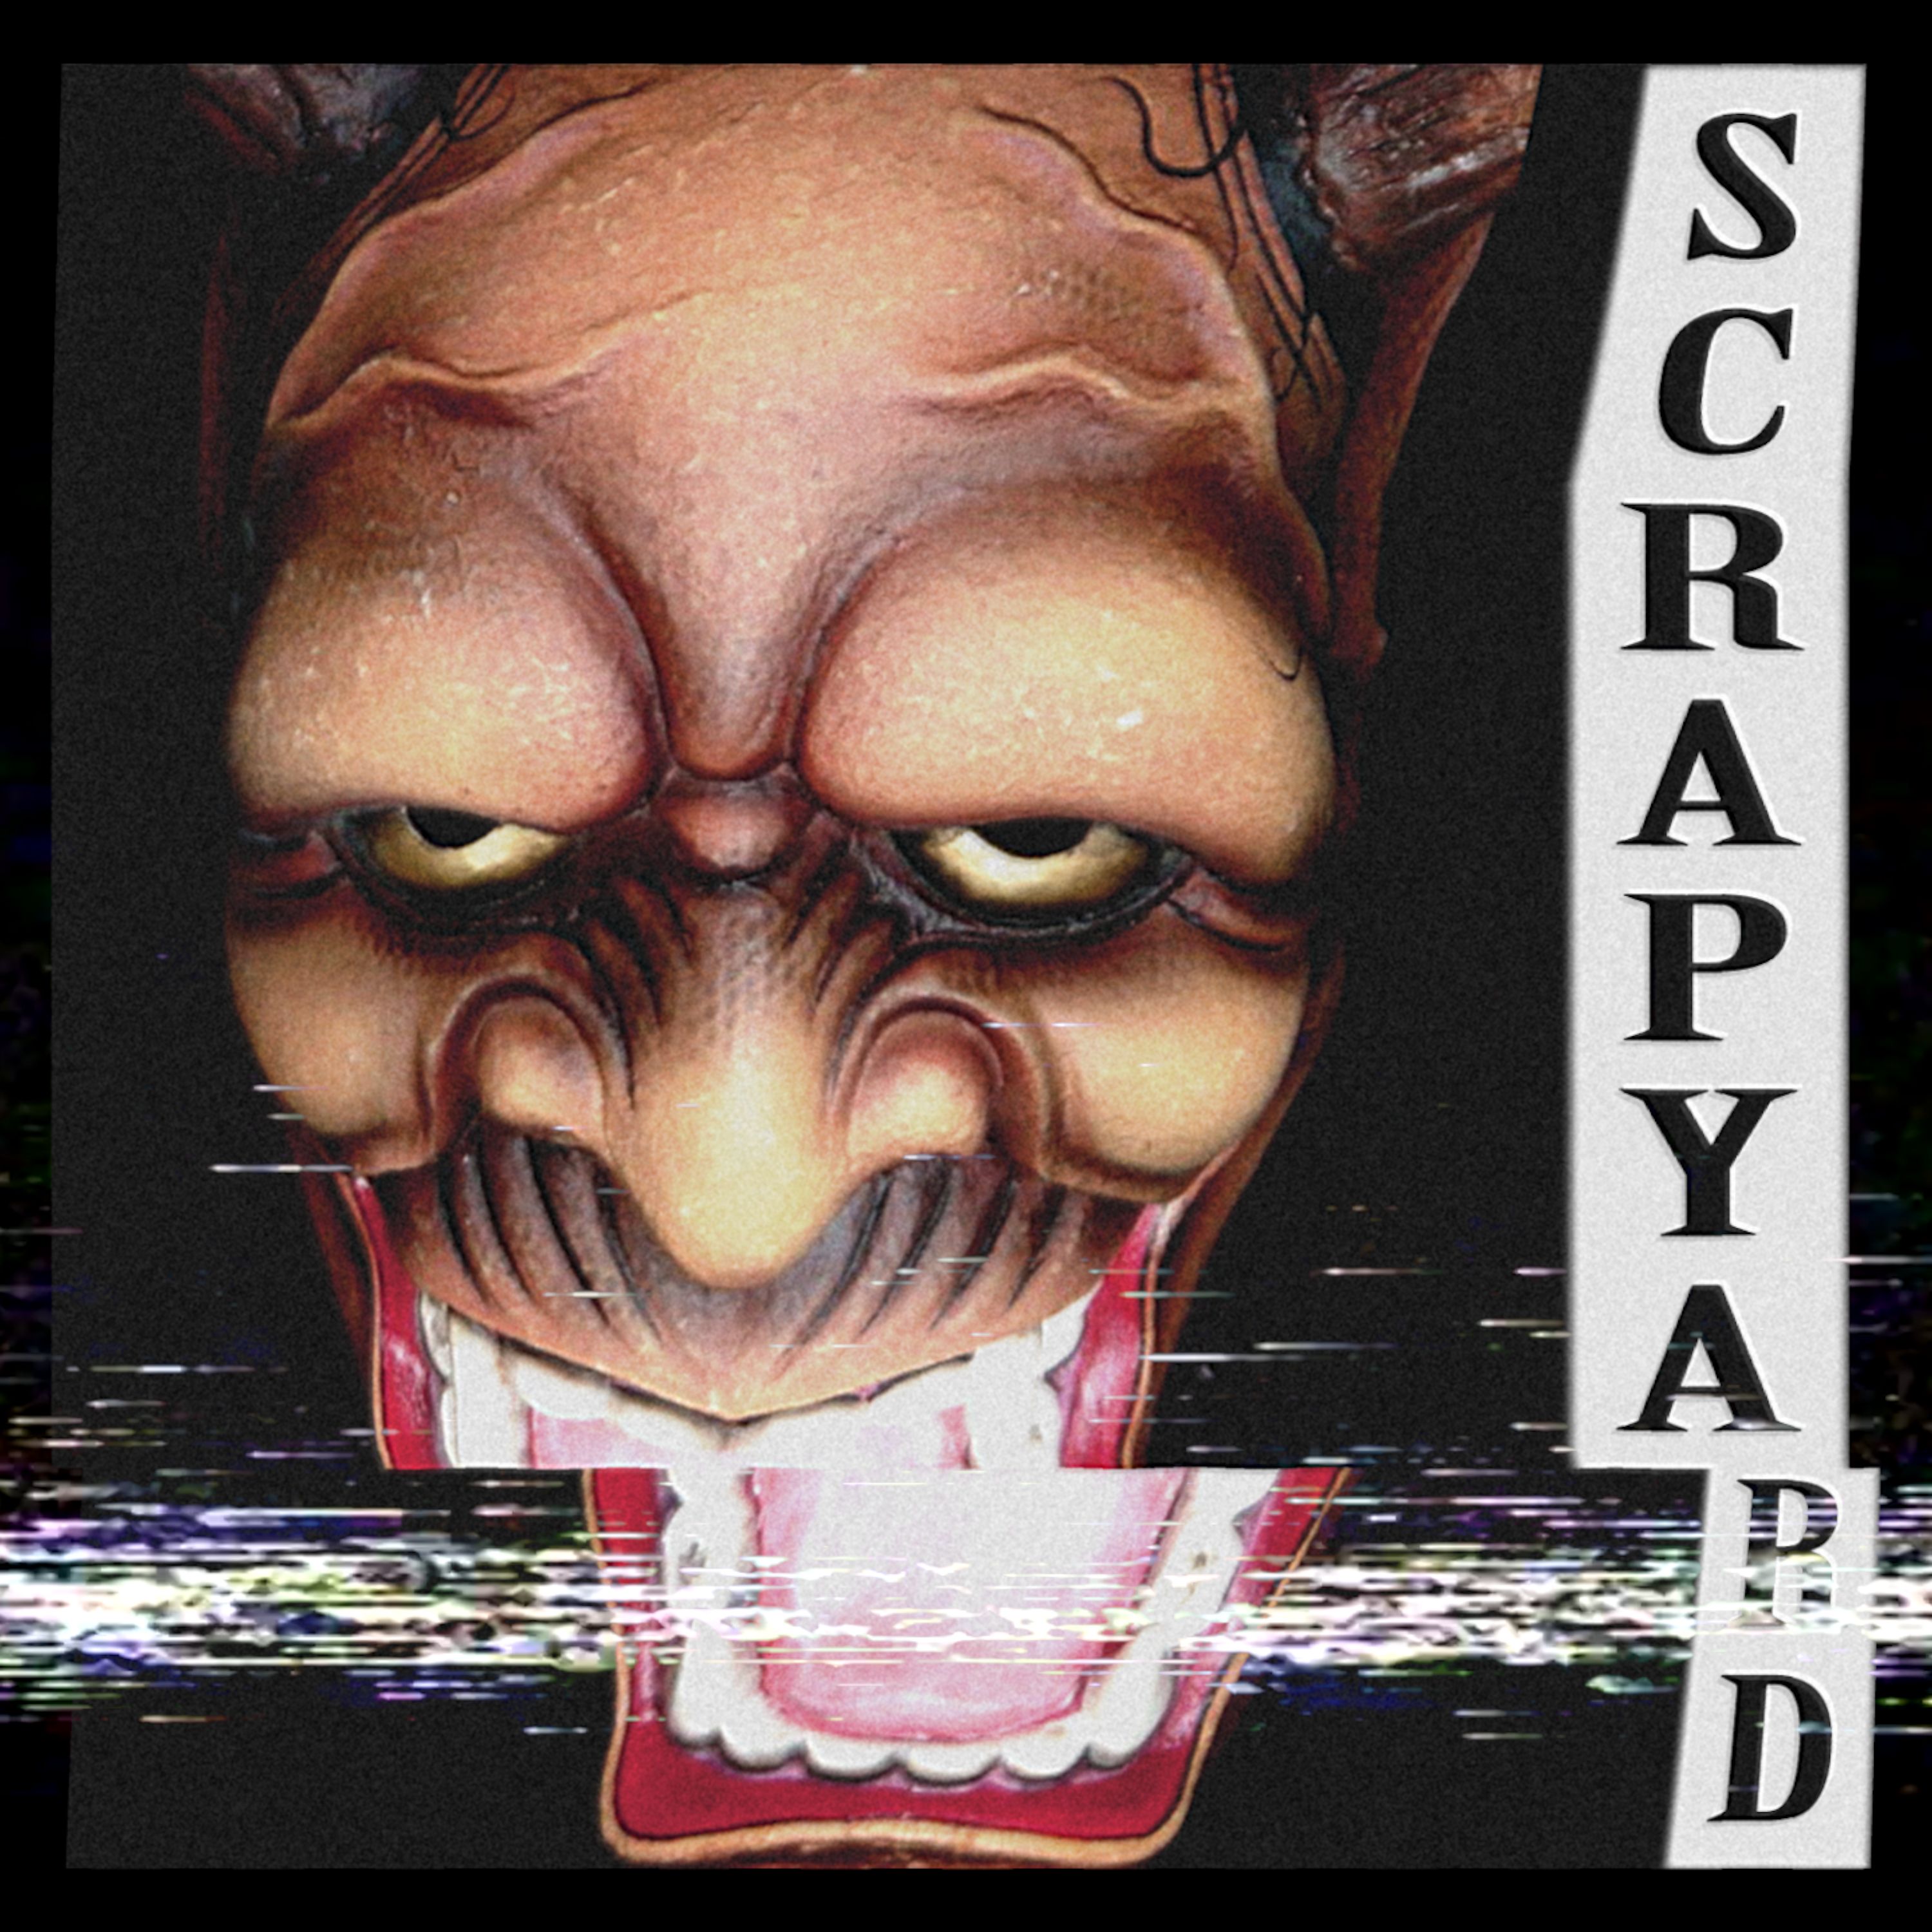 डाउनलोड करा Scrapyard